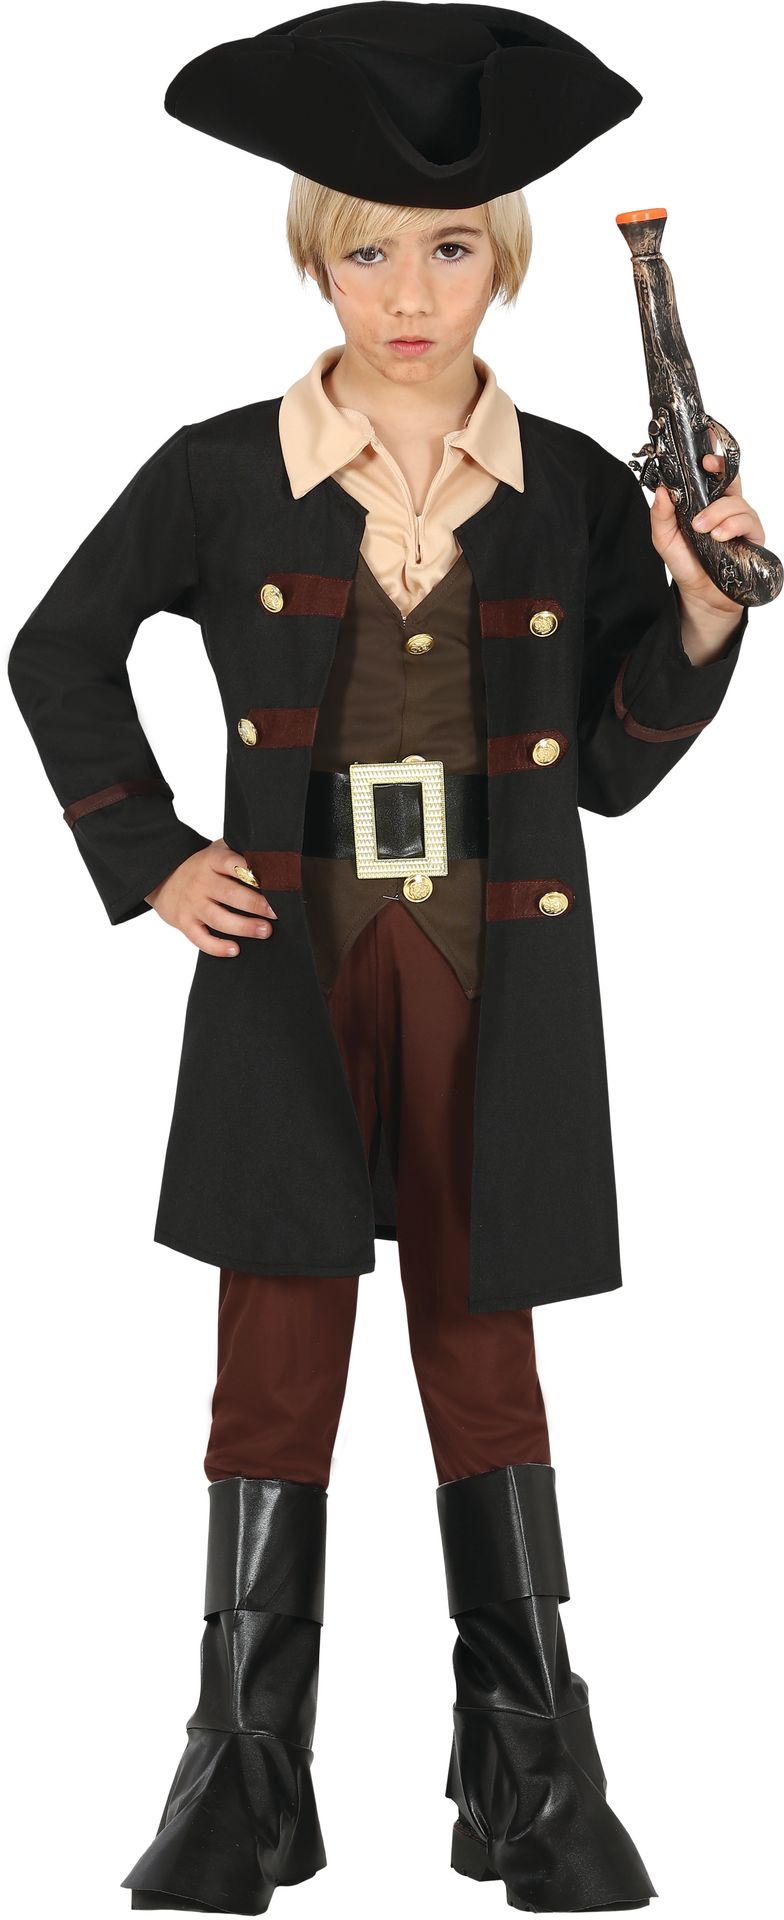 Stoere piraat kostuum jongen